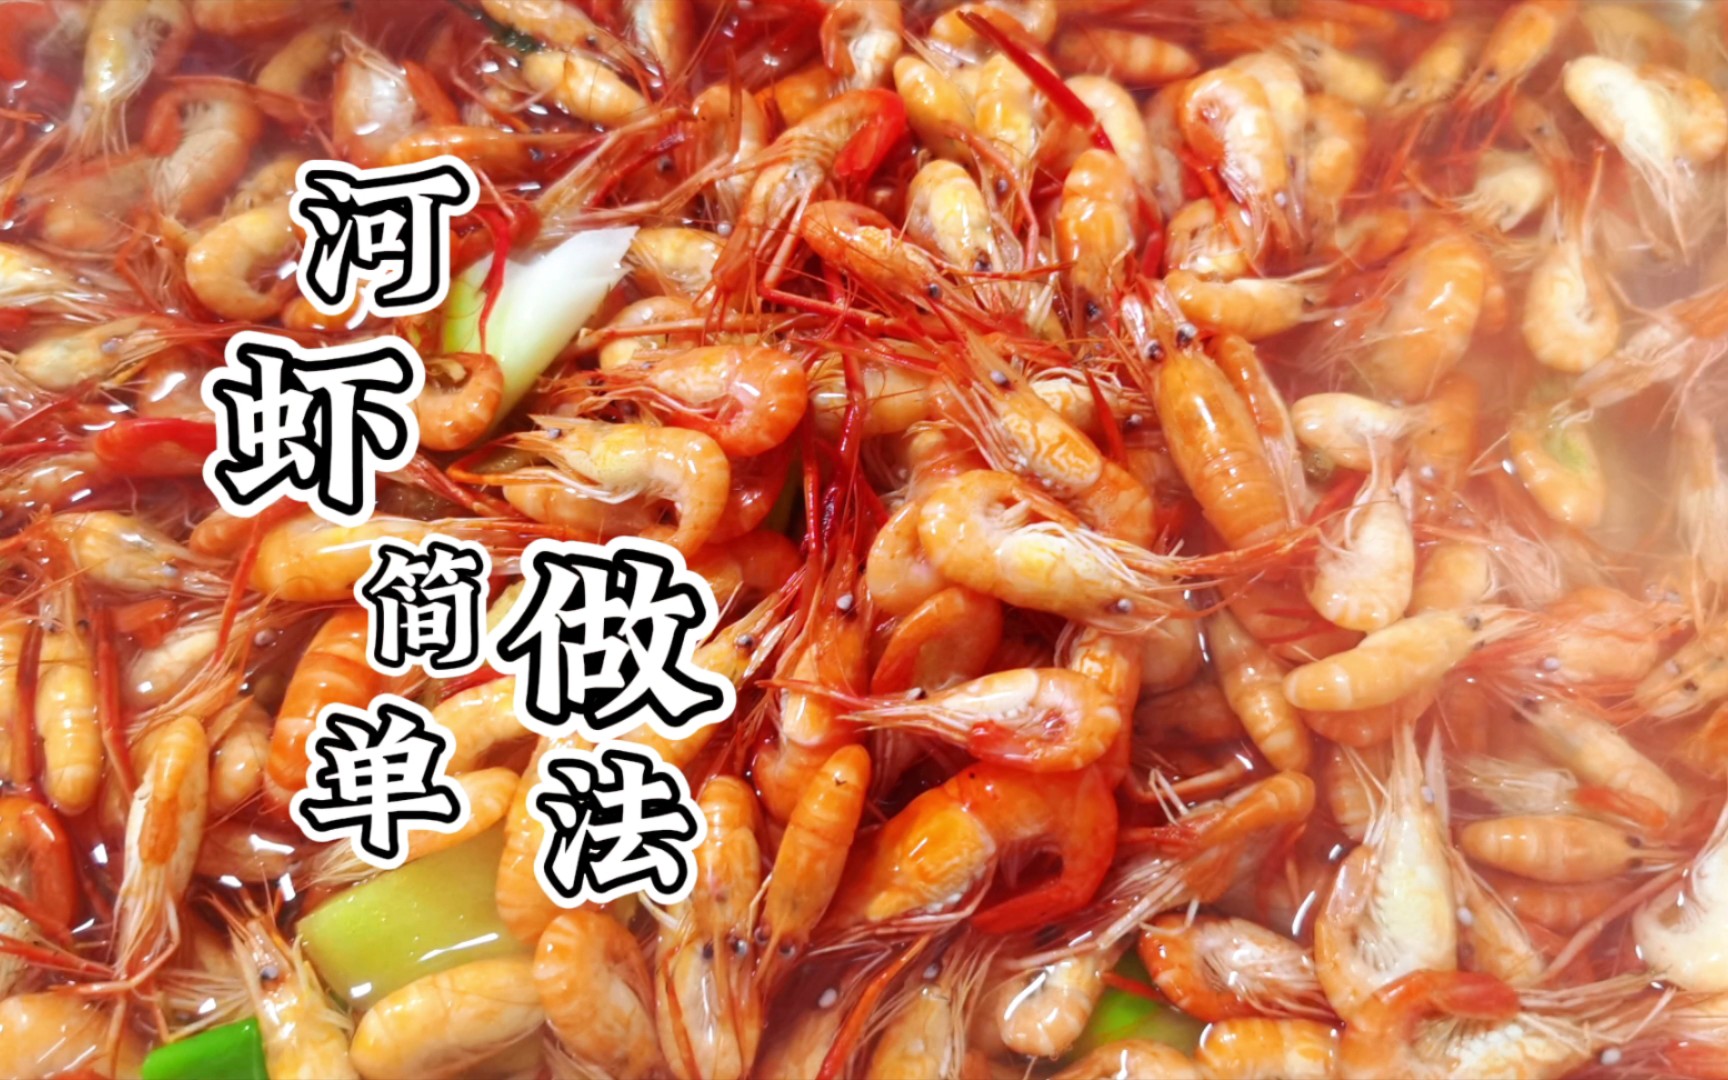 110一斤的河虾，适合用最简单的烹饪方法，盐水煮河虾鲜的不得了